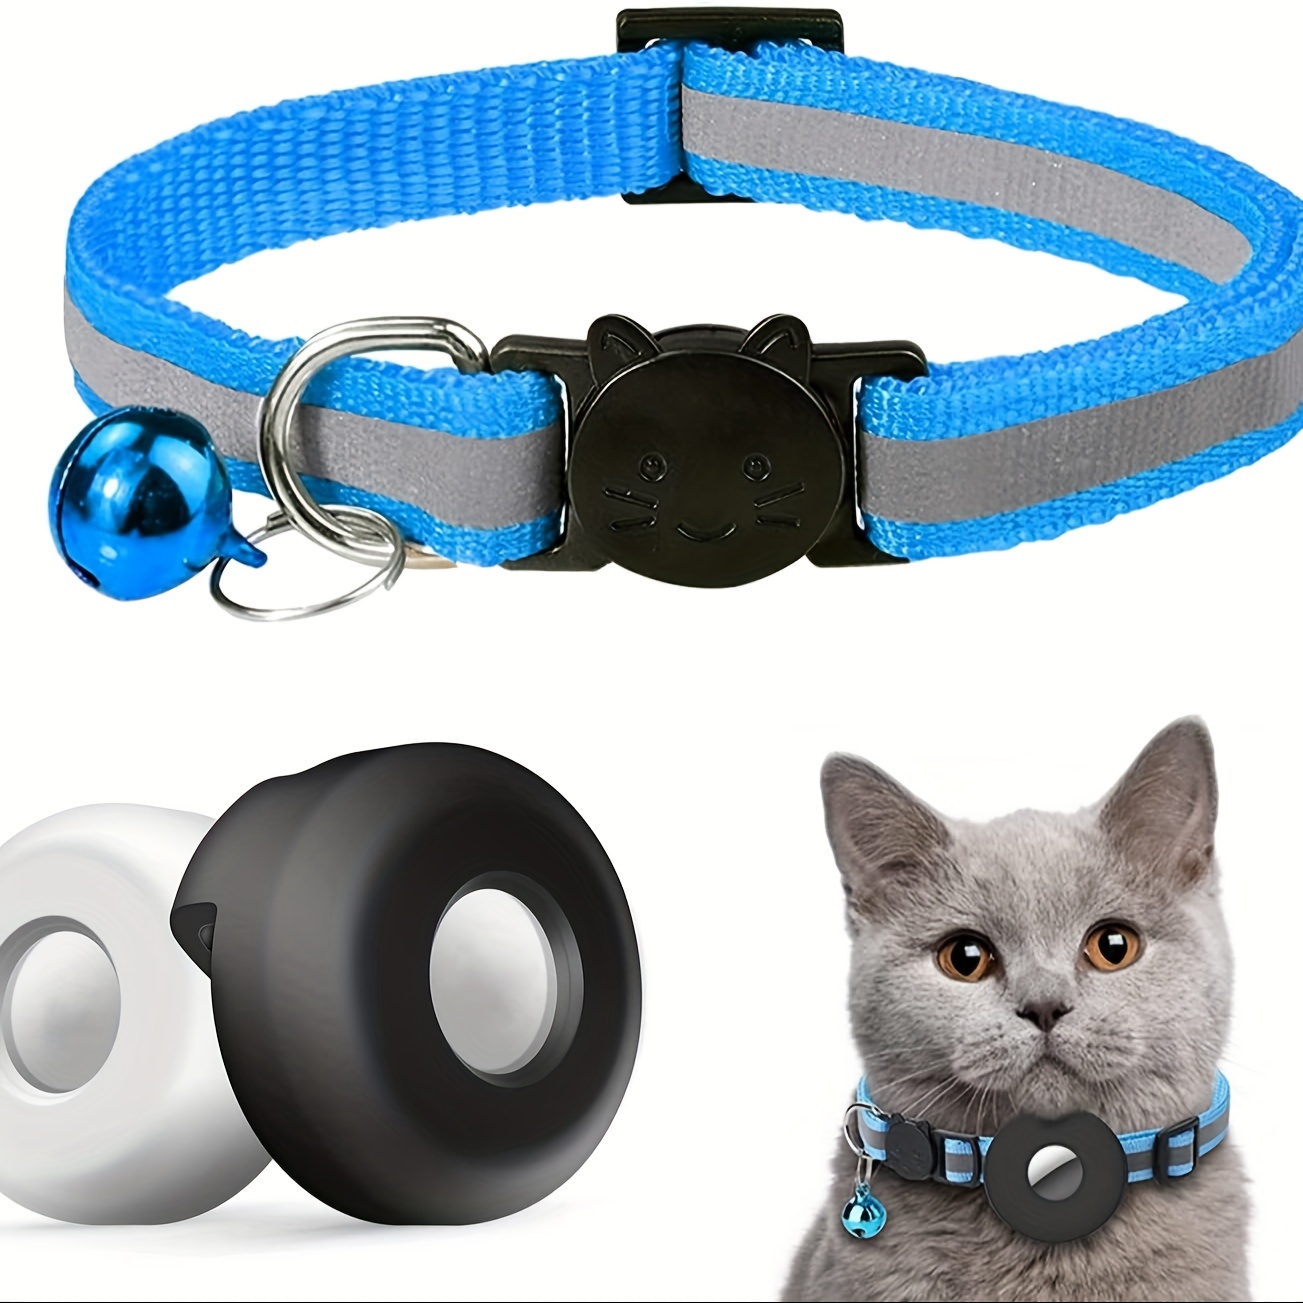  FEEYAR AirTag - Collar de gato integrado con soporte para Apple  AirTag, collar reflectante con GPS para gato con campana [verde azulado],  collares ligeros para gatos hembras, gatitos y cachorros 